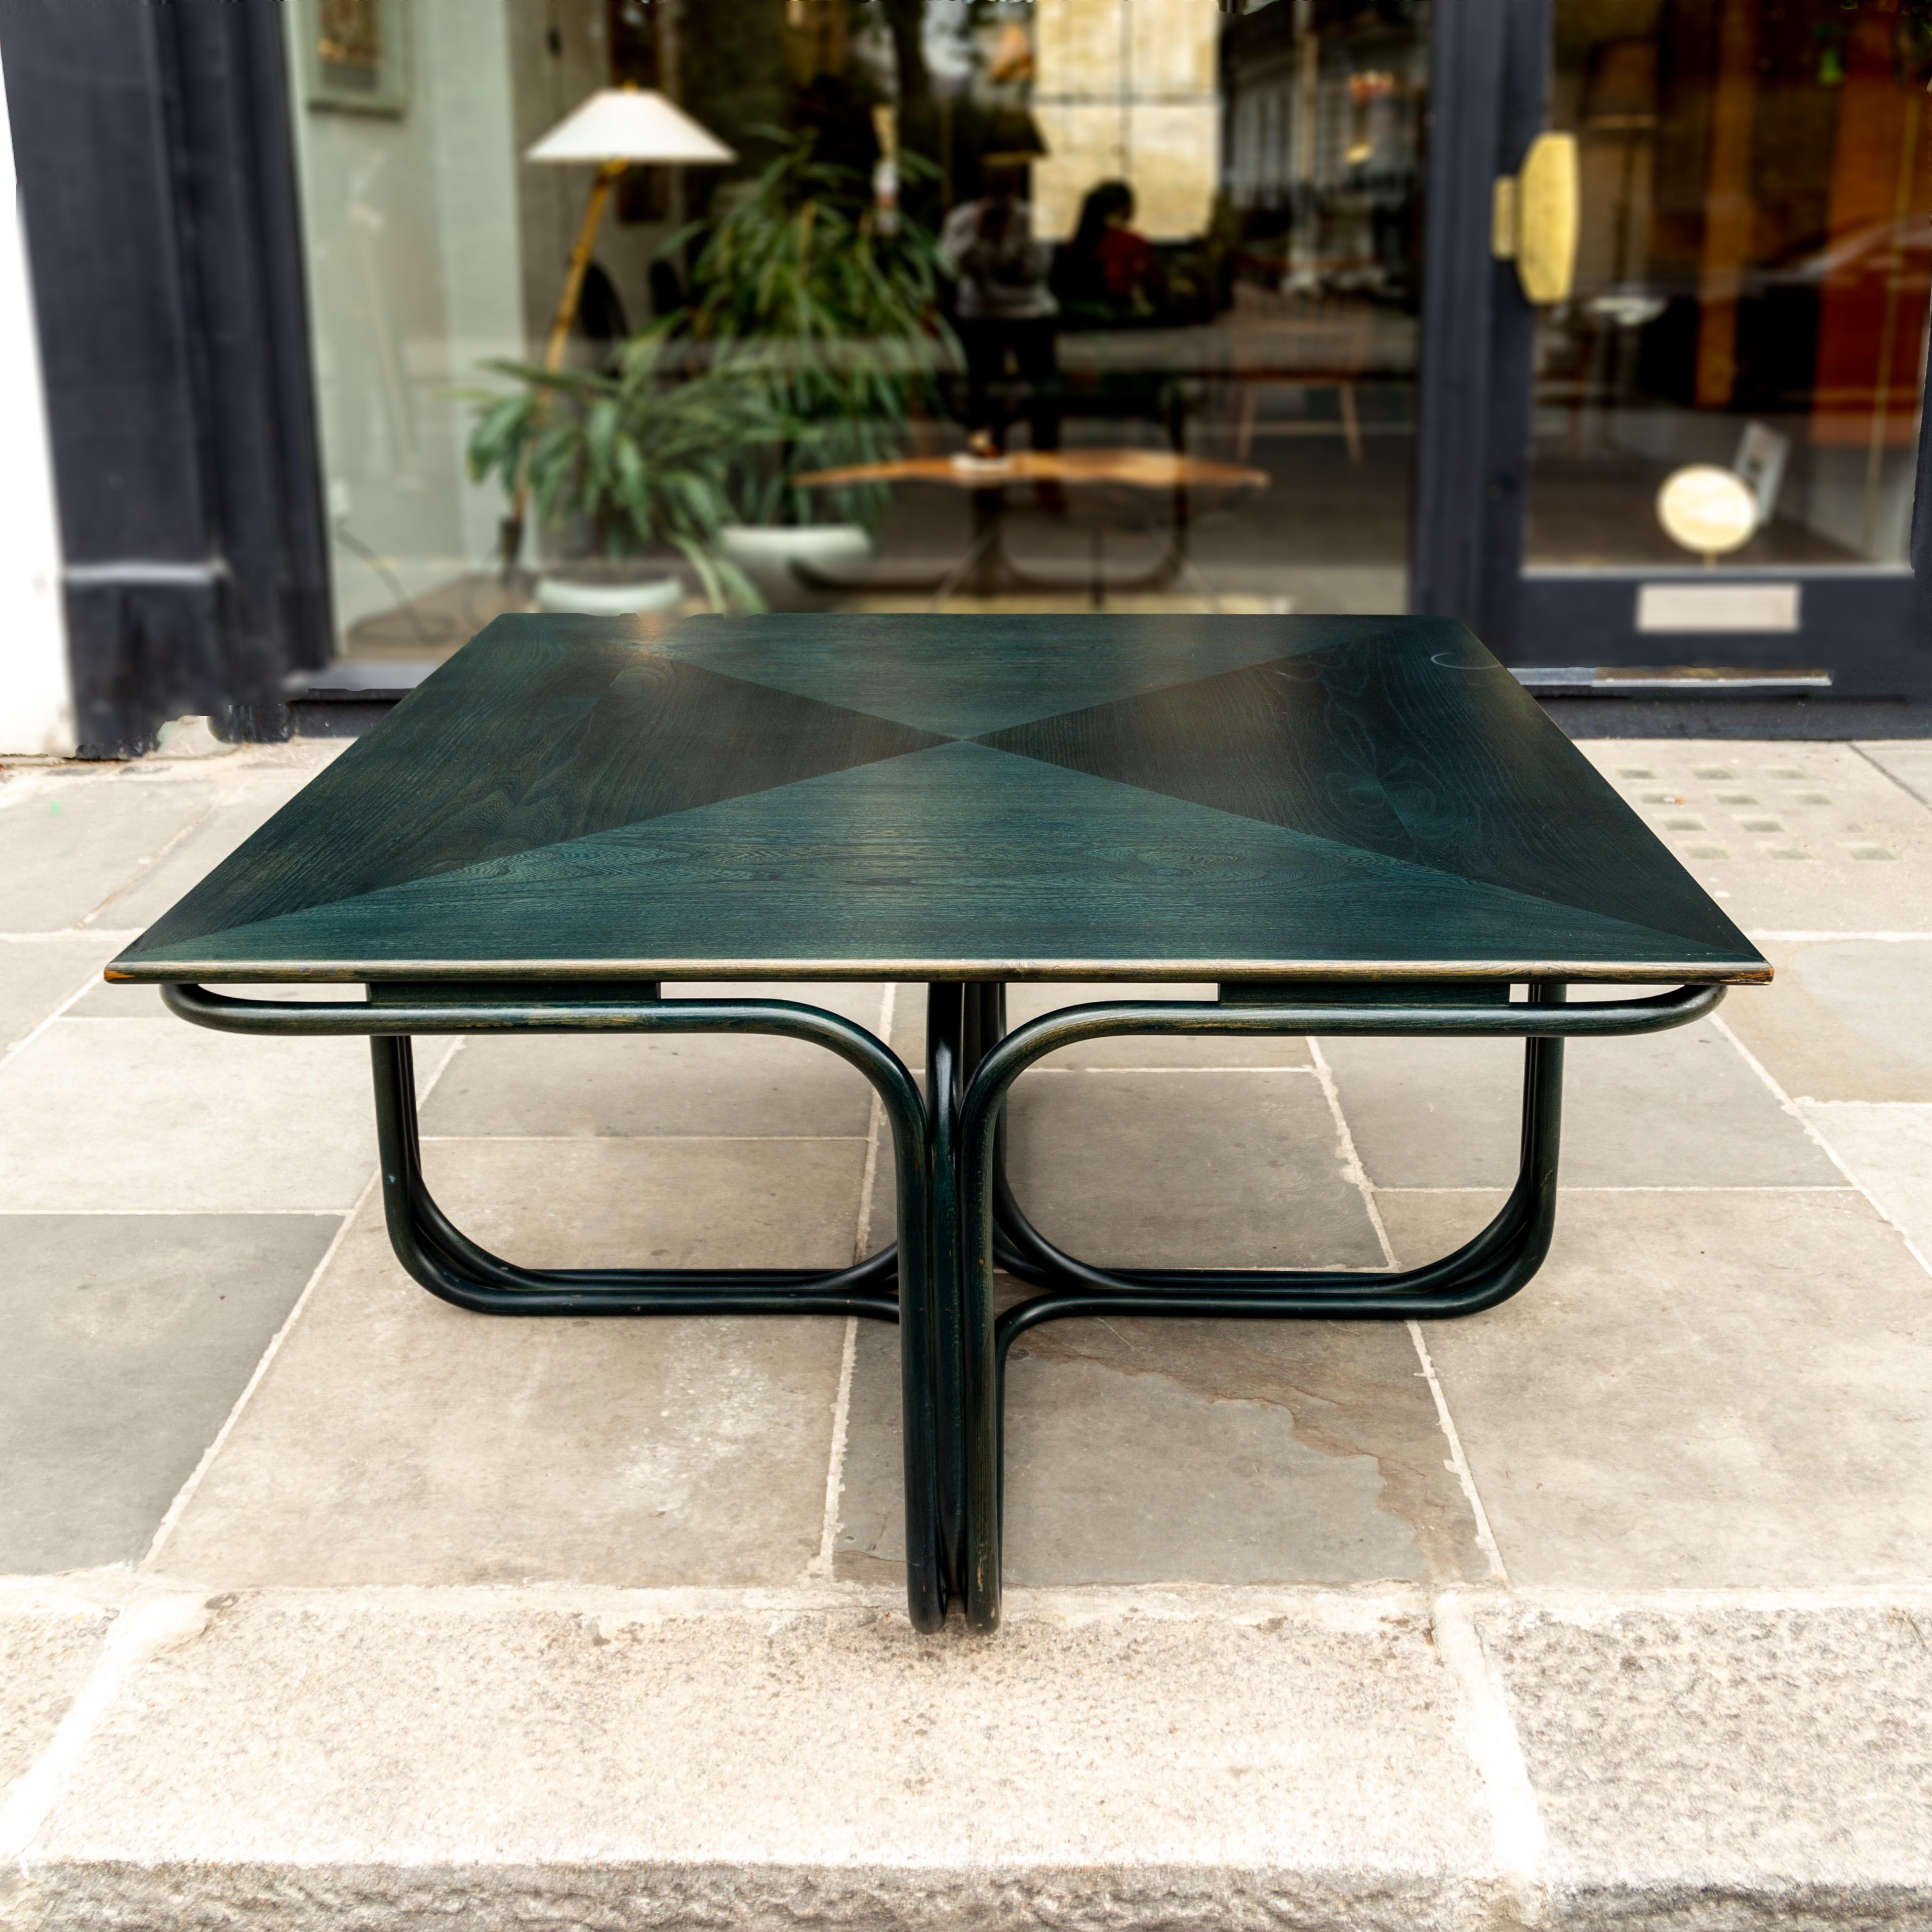 Dieser Tisch aus Bugholz wurde von dem tschechischen Architekten Jan Bočan für die tschechische Botschaft in Stockholm entworfen. Bočan beauftragte die ehemaligen Fabriken von Michael Thonet in der Tschechischen Republik, die in den 1970er Jahren